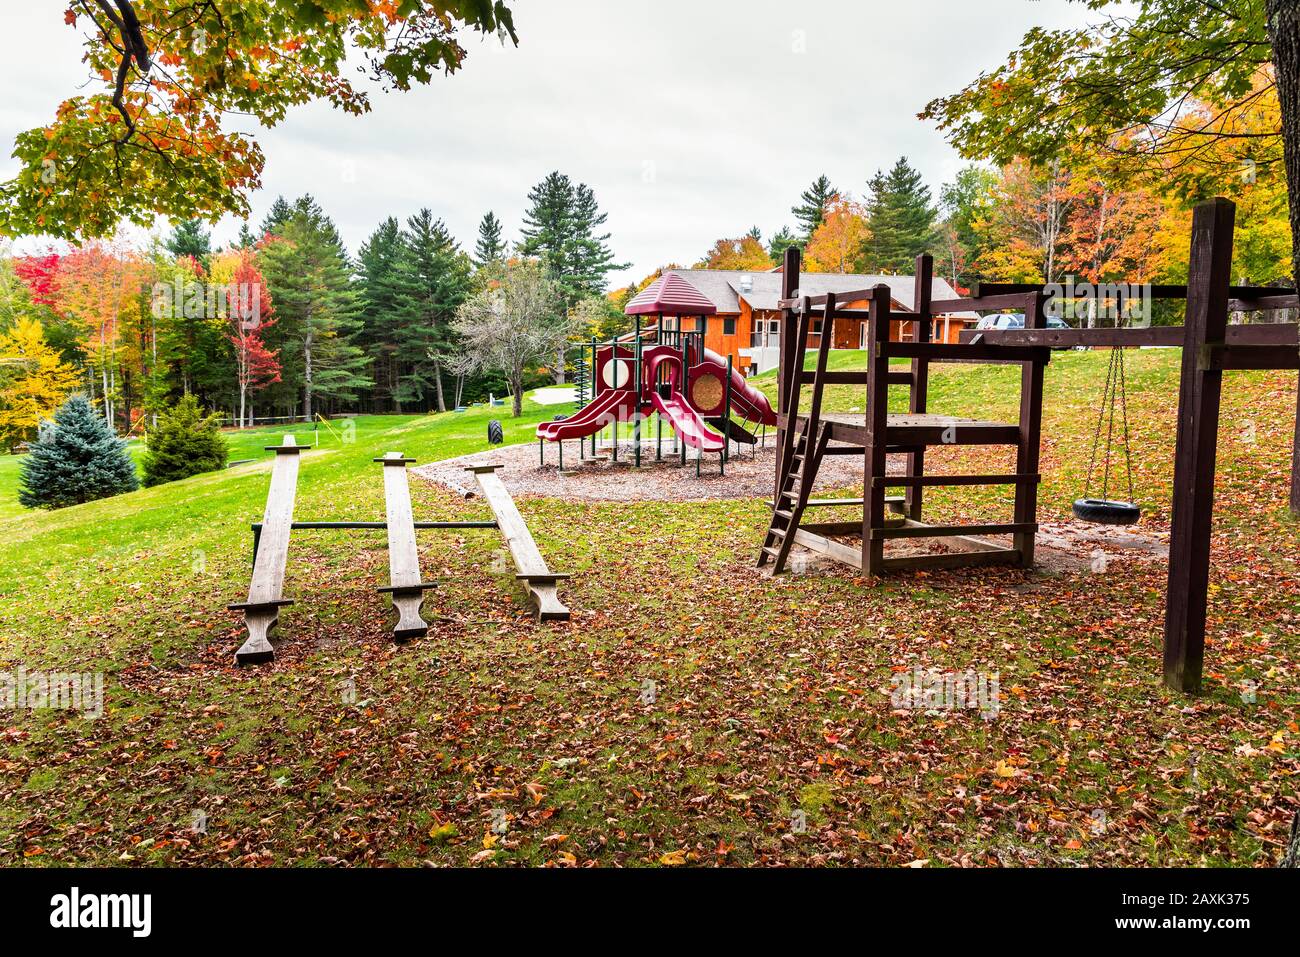 Spielplatz in einem Park, umgeben von farbenfrohen Herbstbäumen an einem wolkigen Morgen. Herbstlaub. Stockfoto